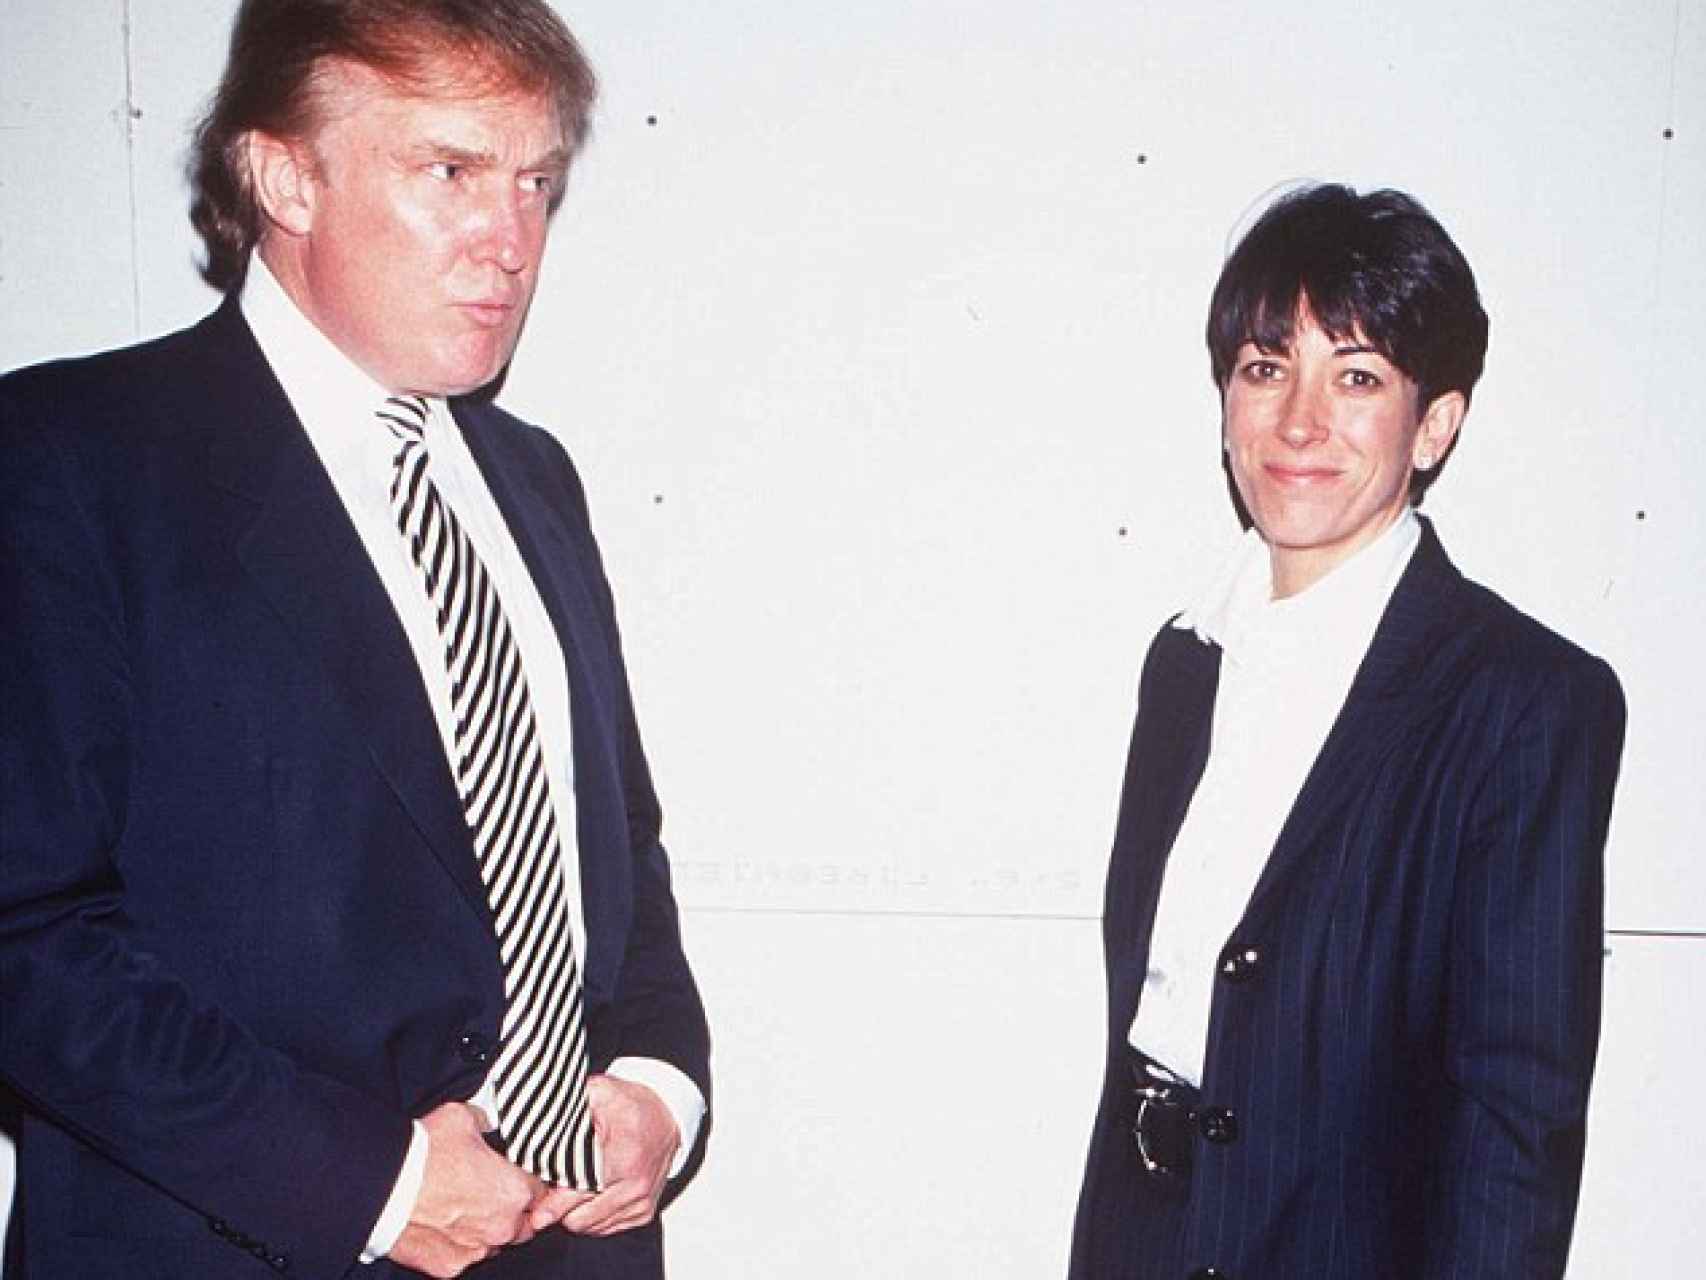 imagen de hace años. Donald Trump junto a la ex novia de Epstein.